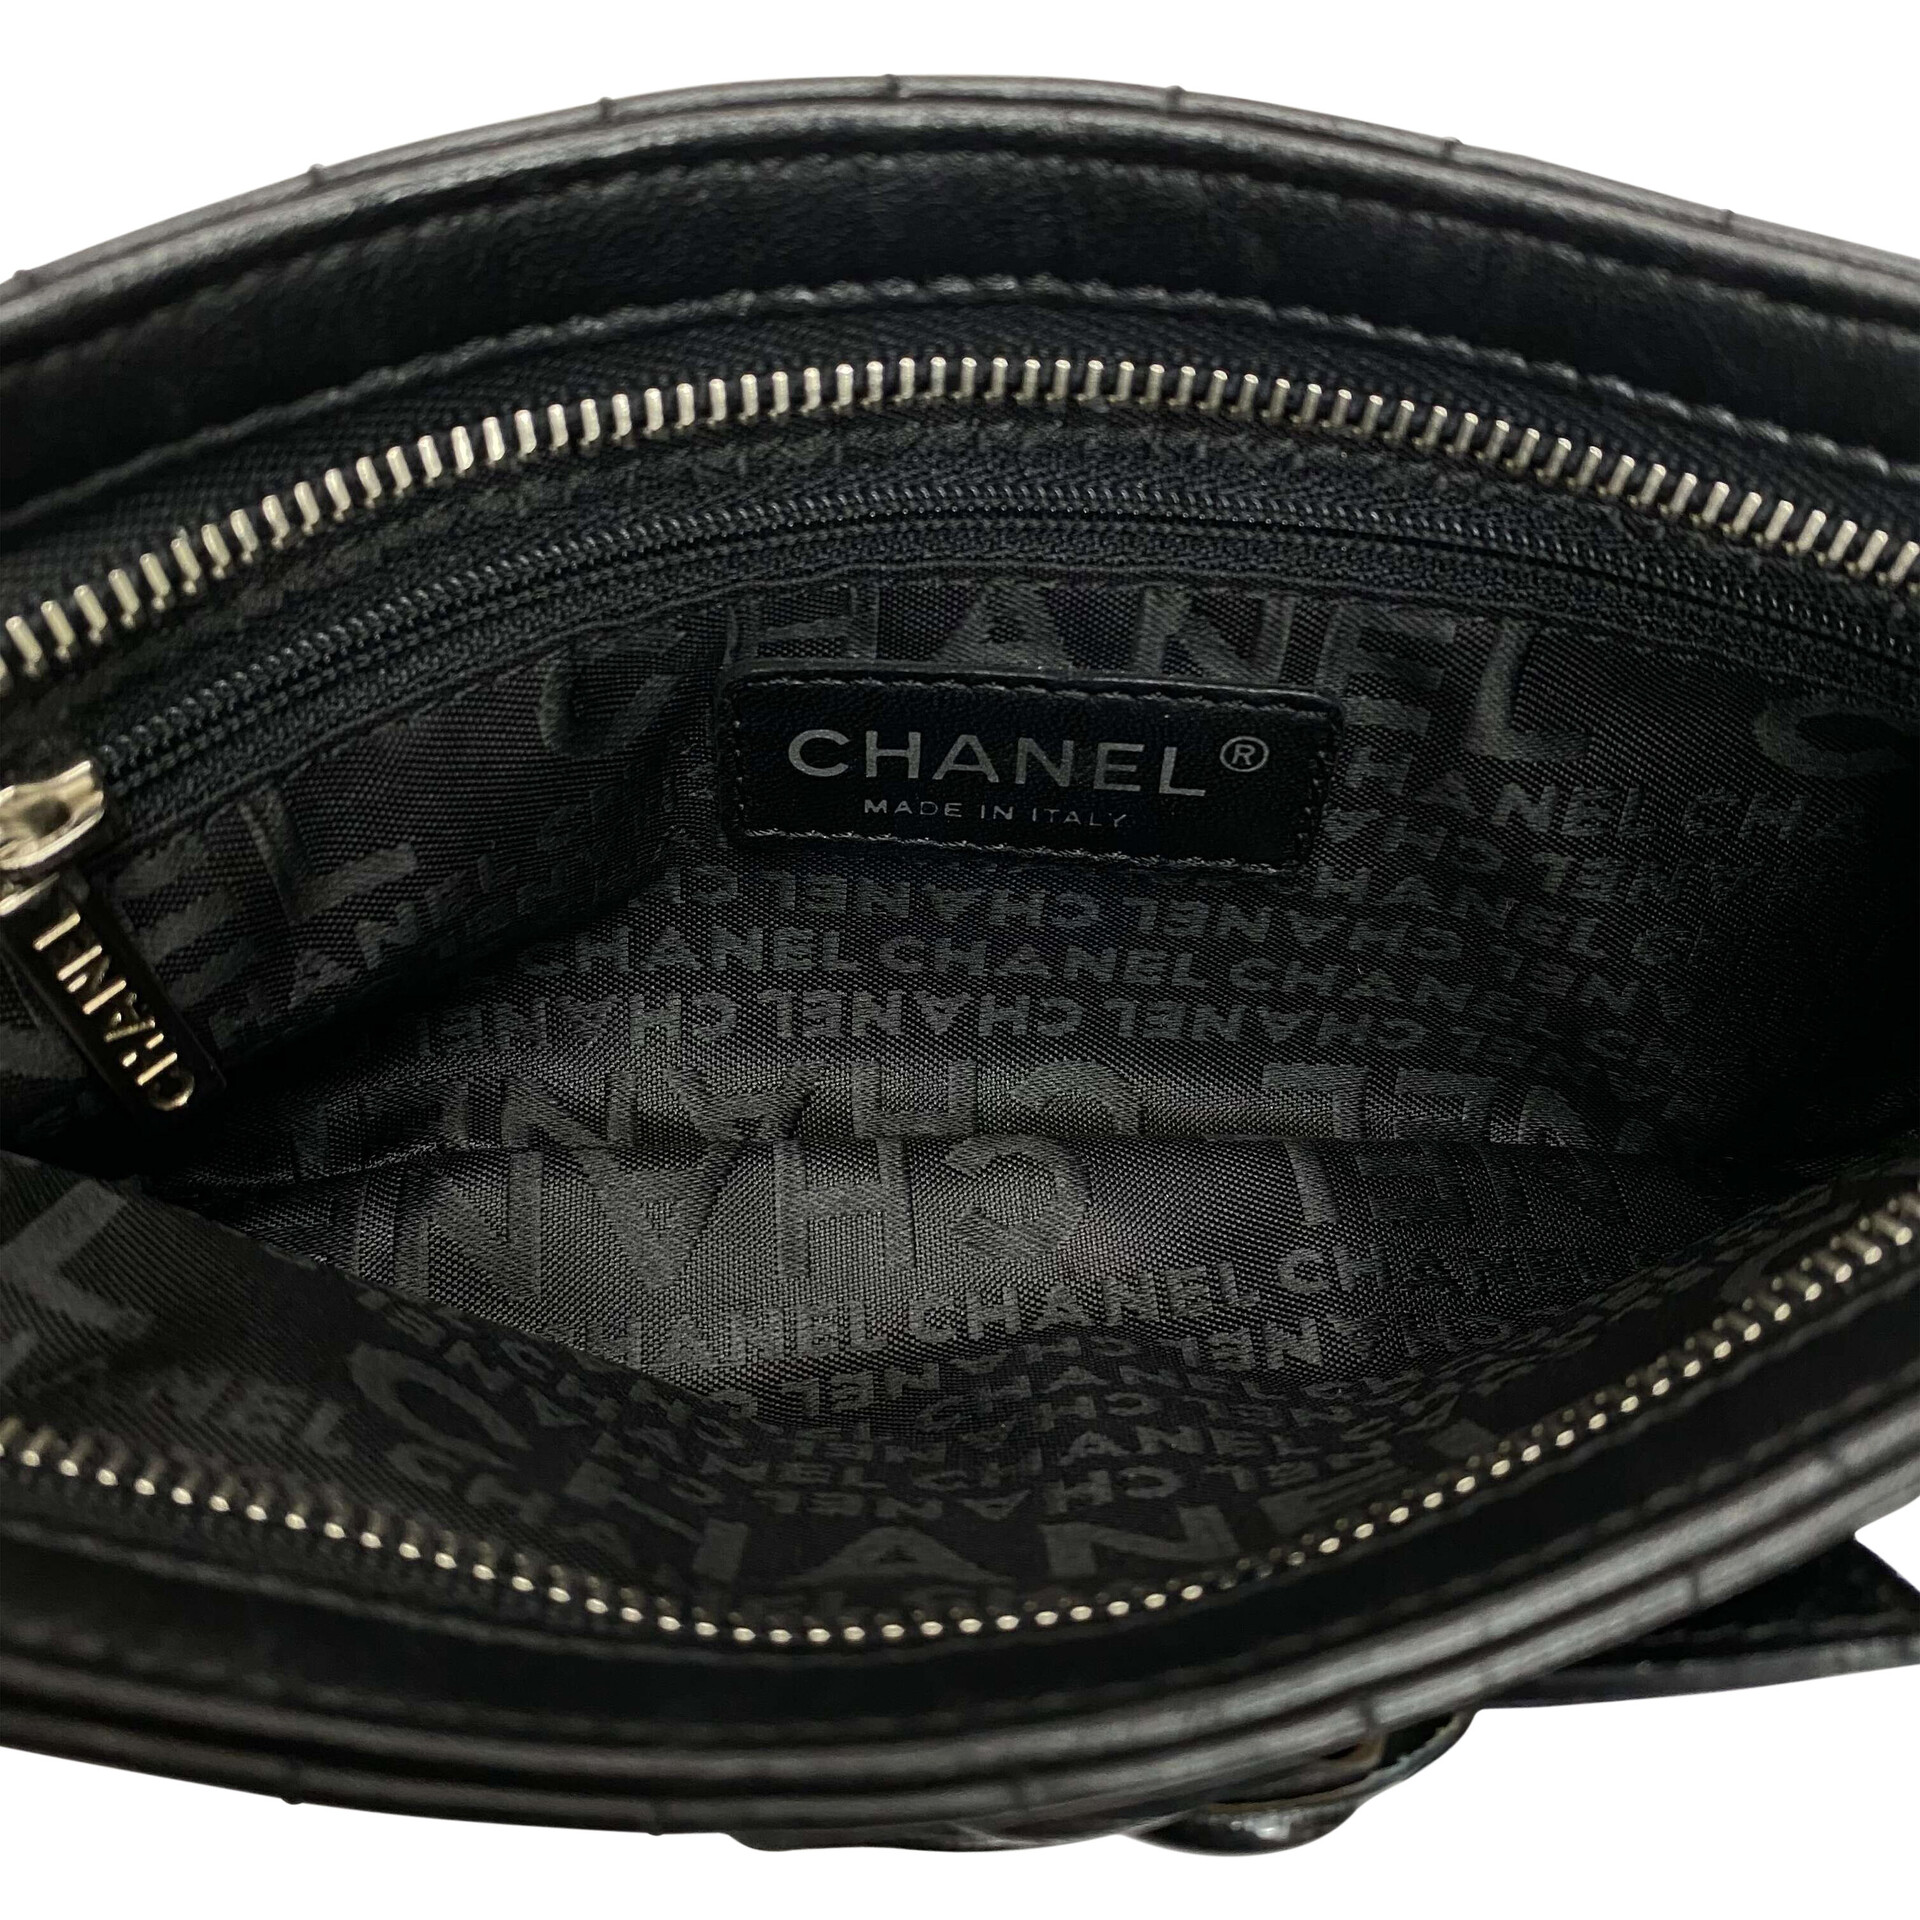 Bolsa Chanel Camellia Nº 5 Quilted Preta